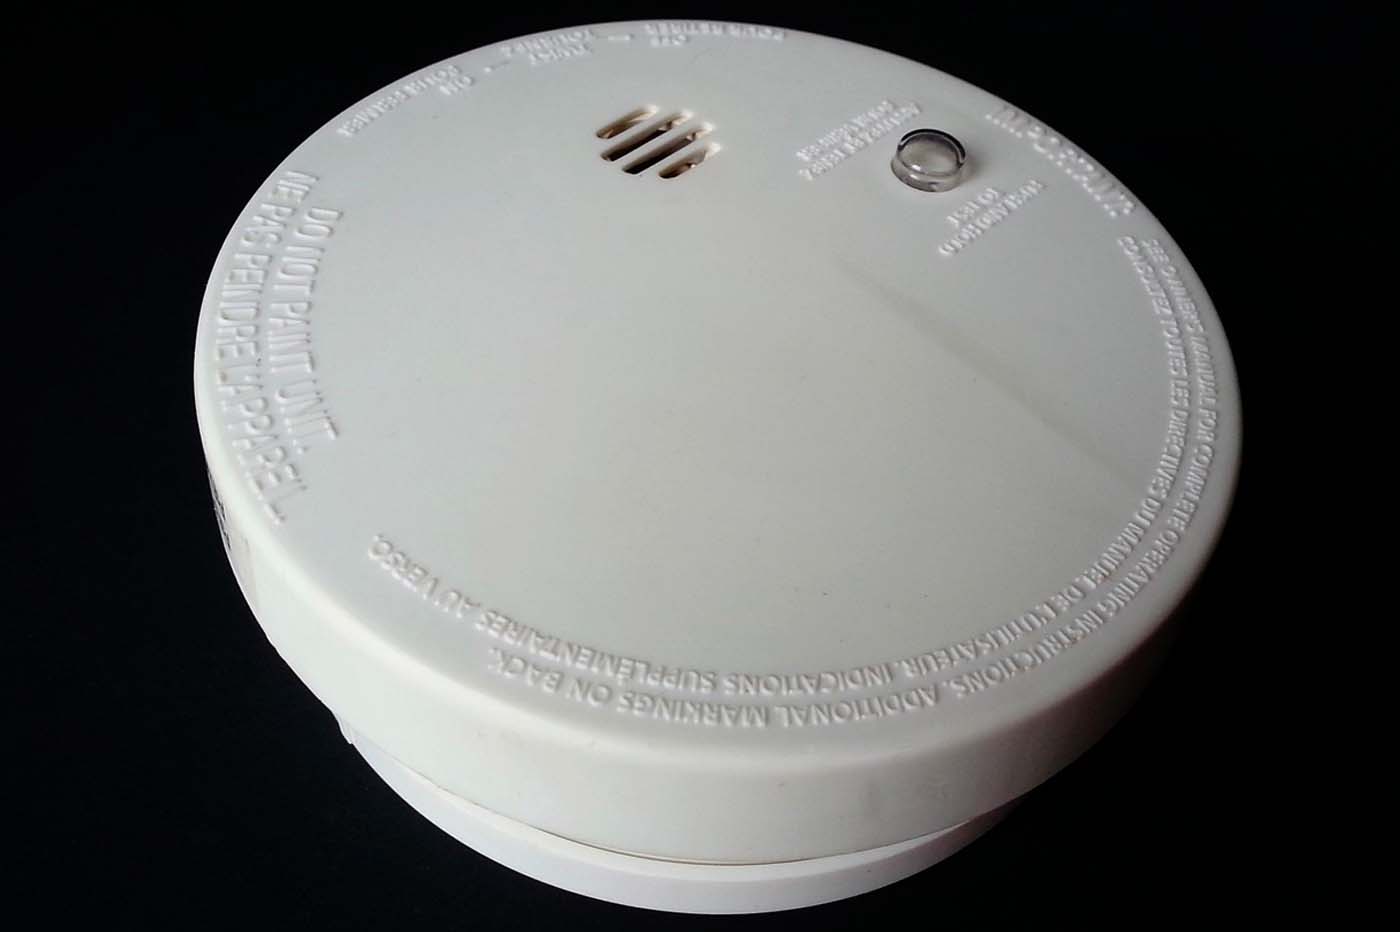 Fausse alerte incendie : Vérifiez bien vos piles de détecteurs de fumée